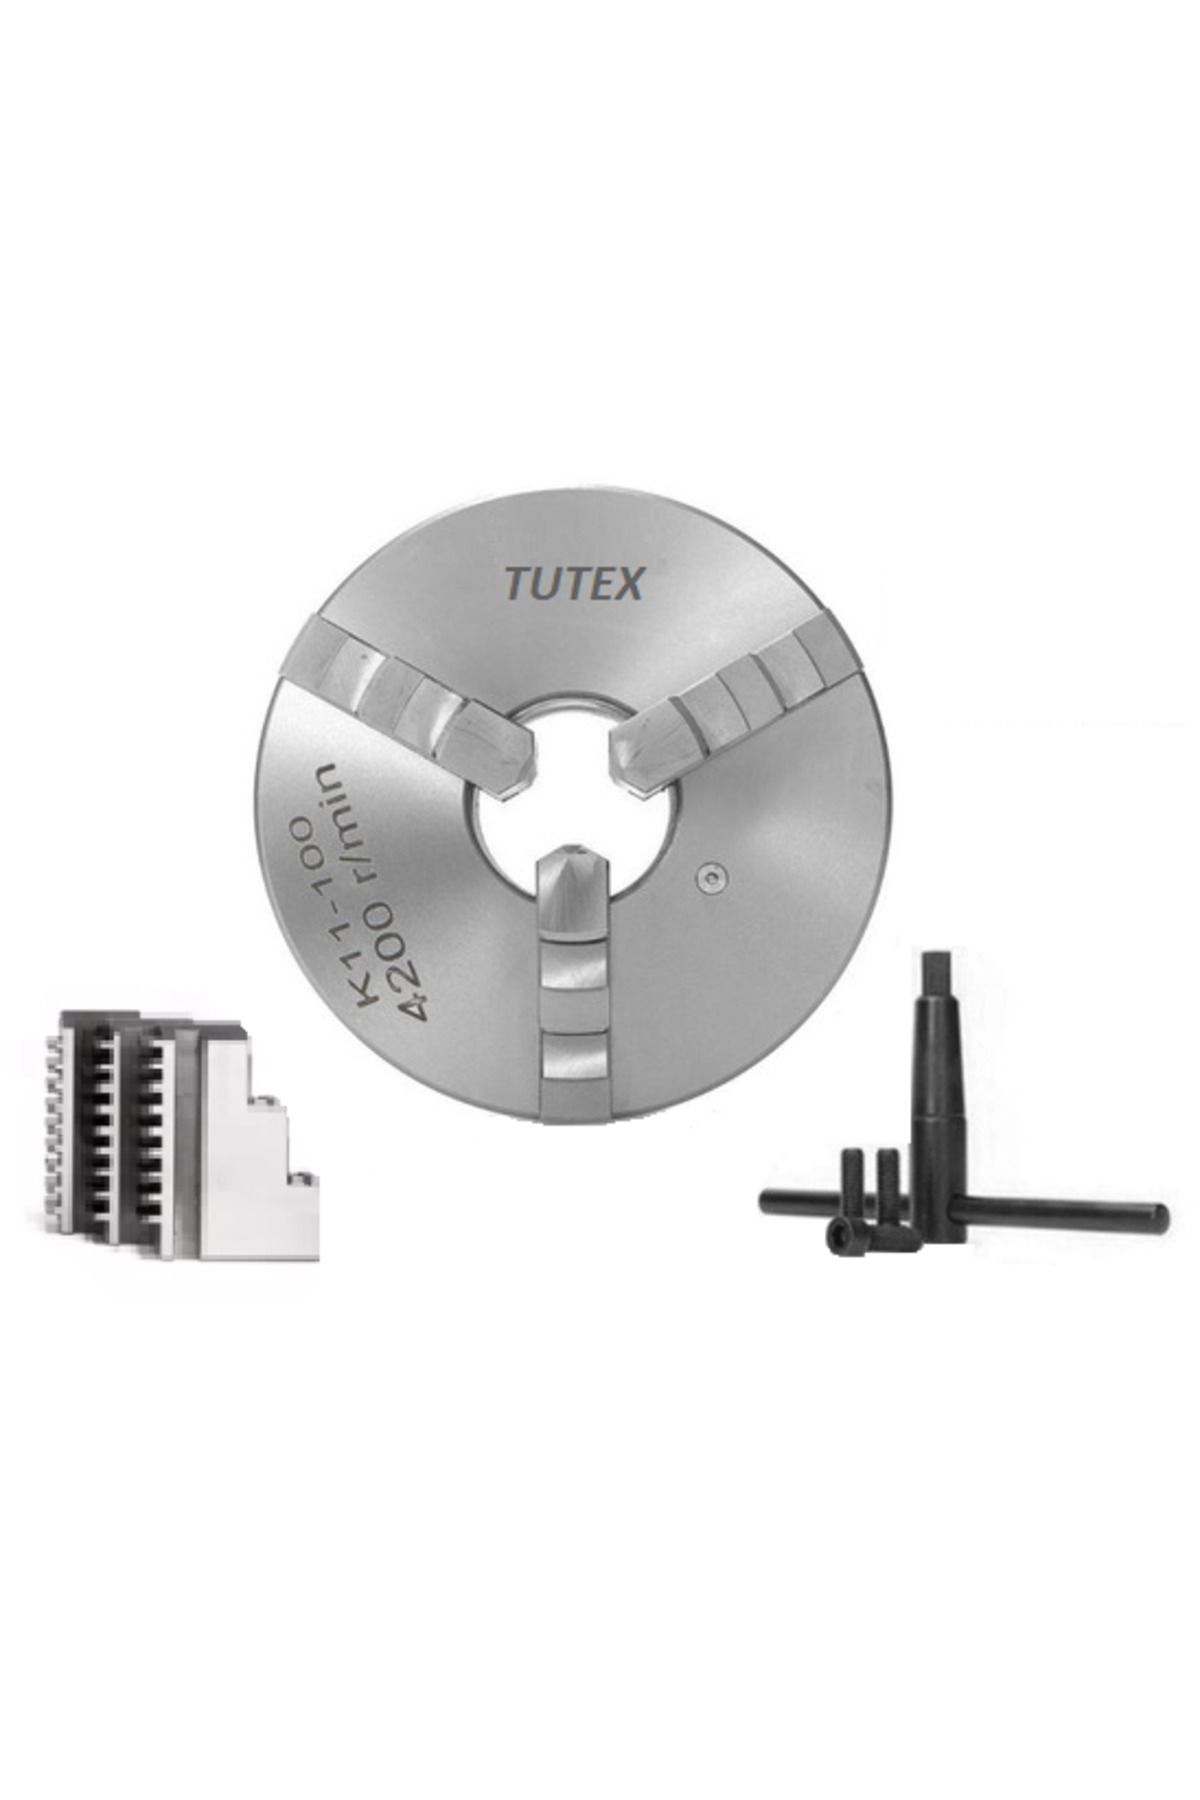 TUTEX K11 Üniversal Torna Aynası 3 Ayaklı 315 mm